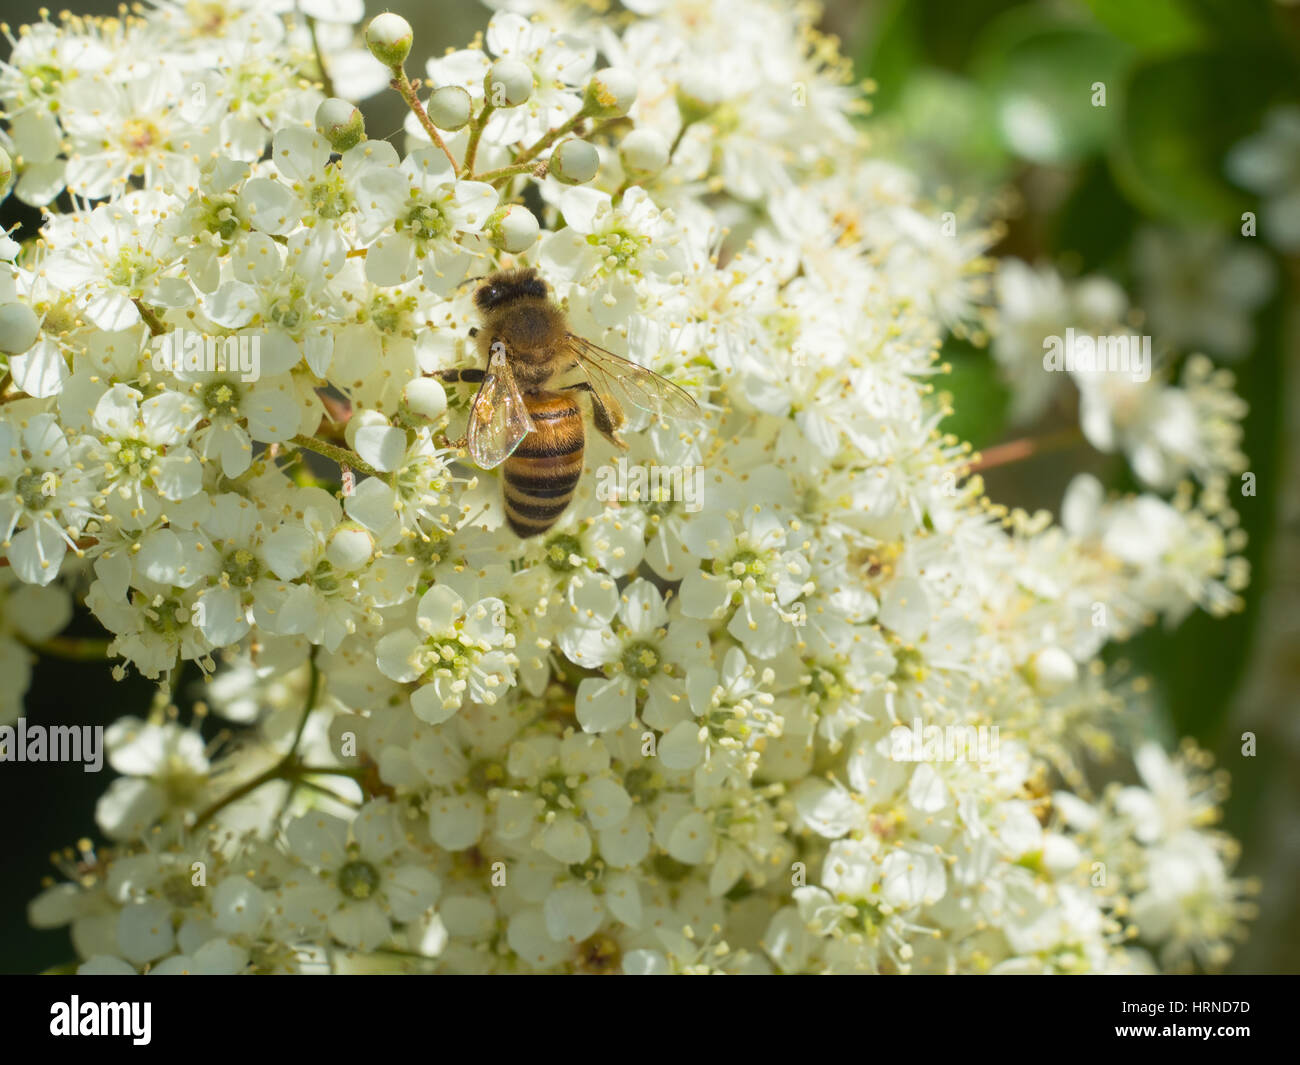 Abeja trabajadora chupar néctar de un racimo de pequeñas flores blancas de un arbusto Foto de stock